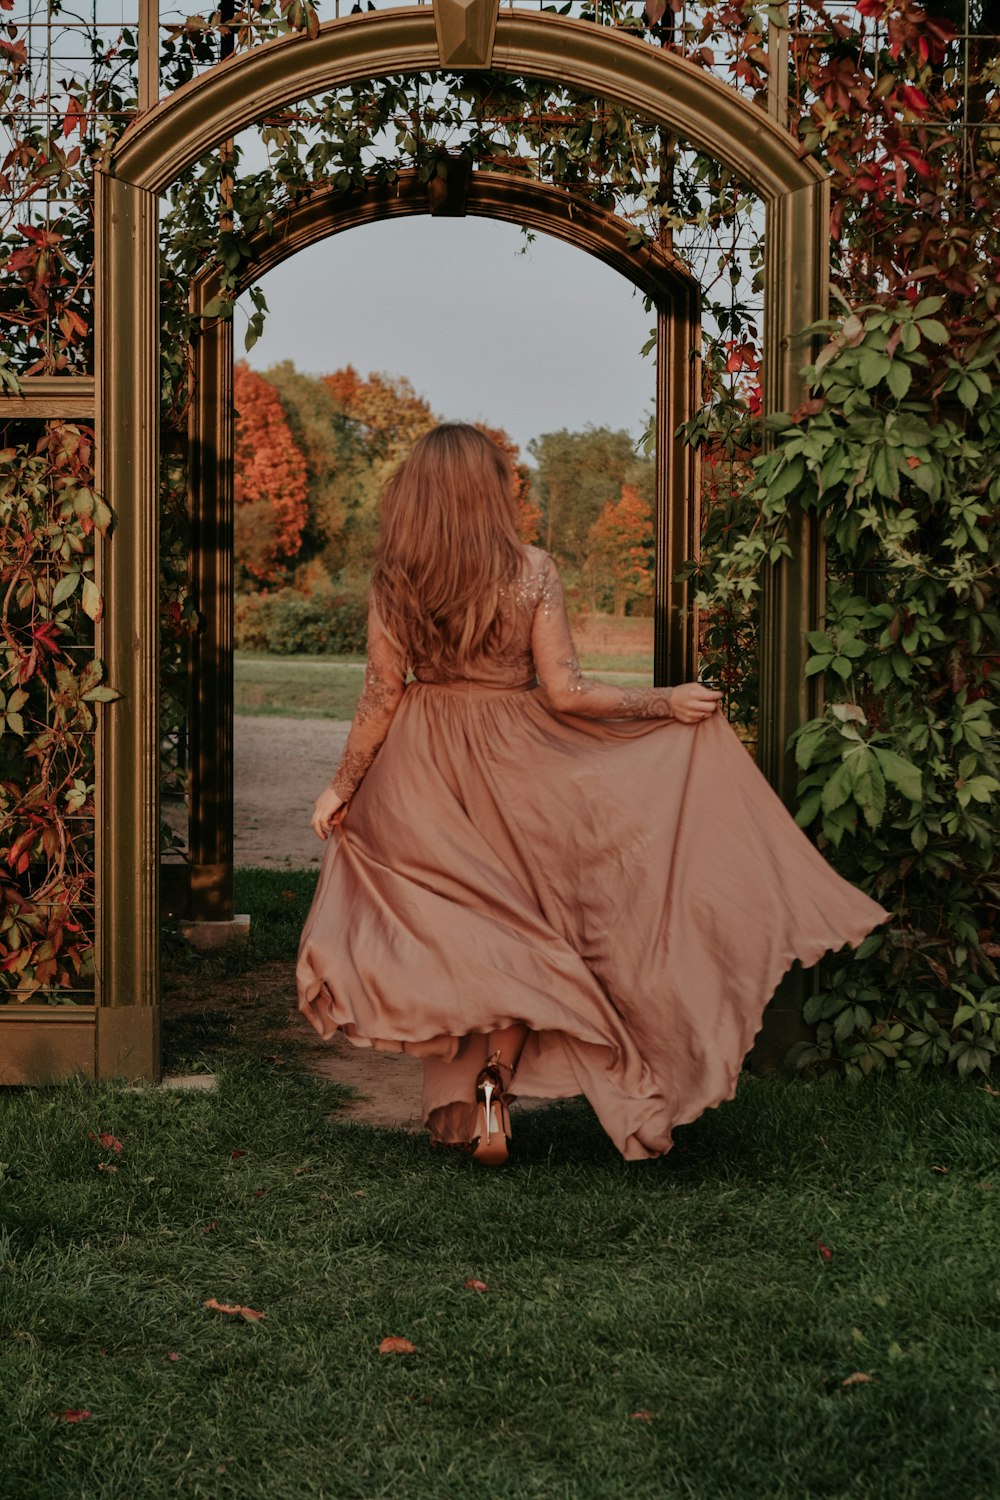 a woman in a long dress walking through a garden